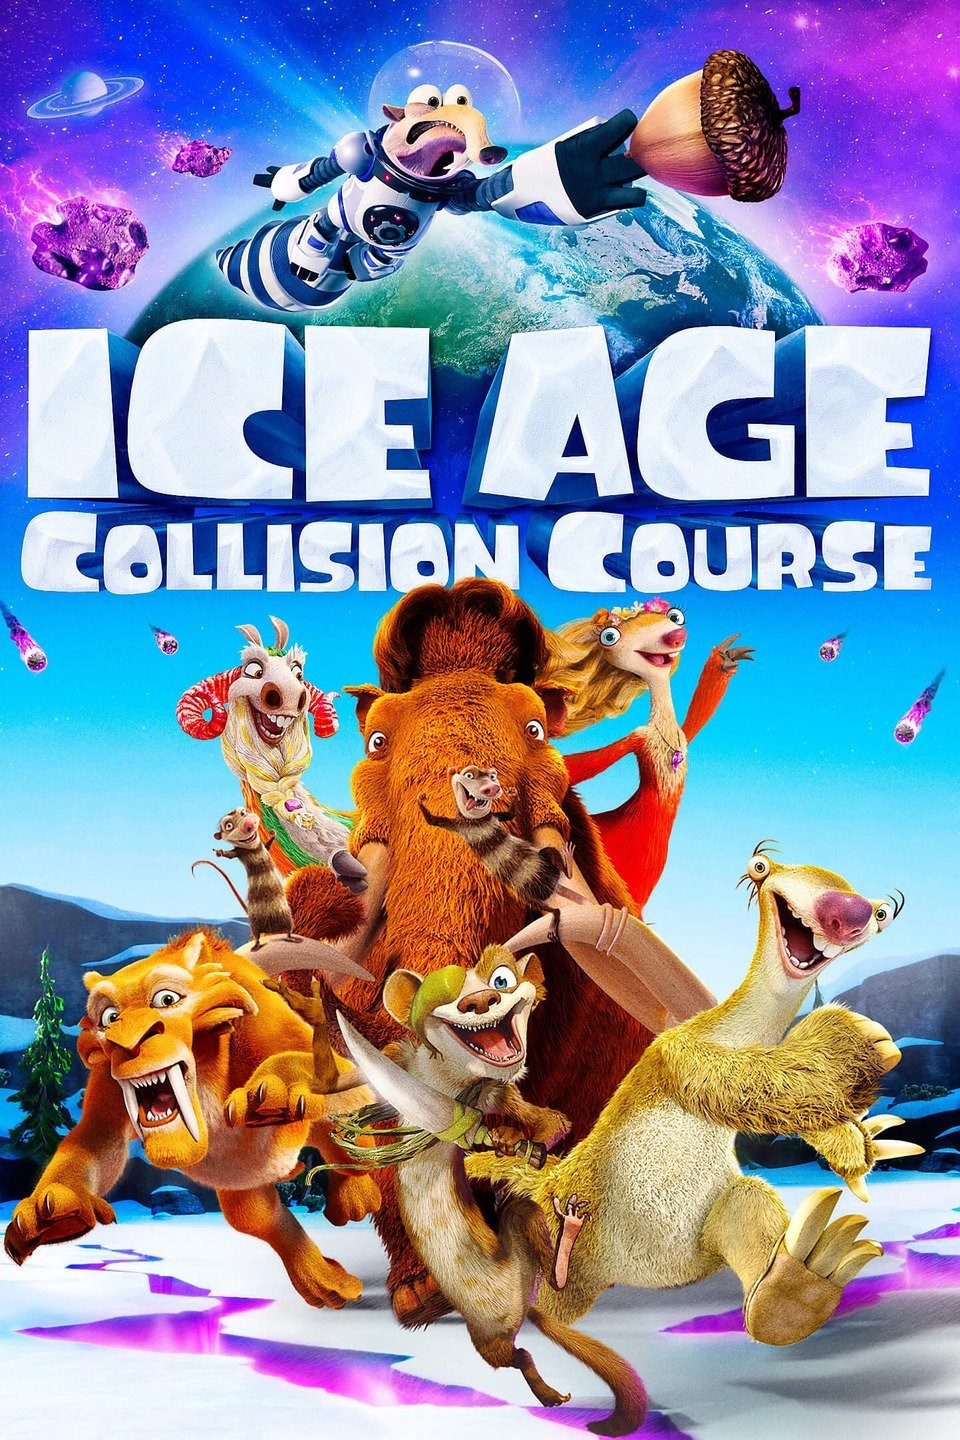 ice age 5